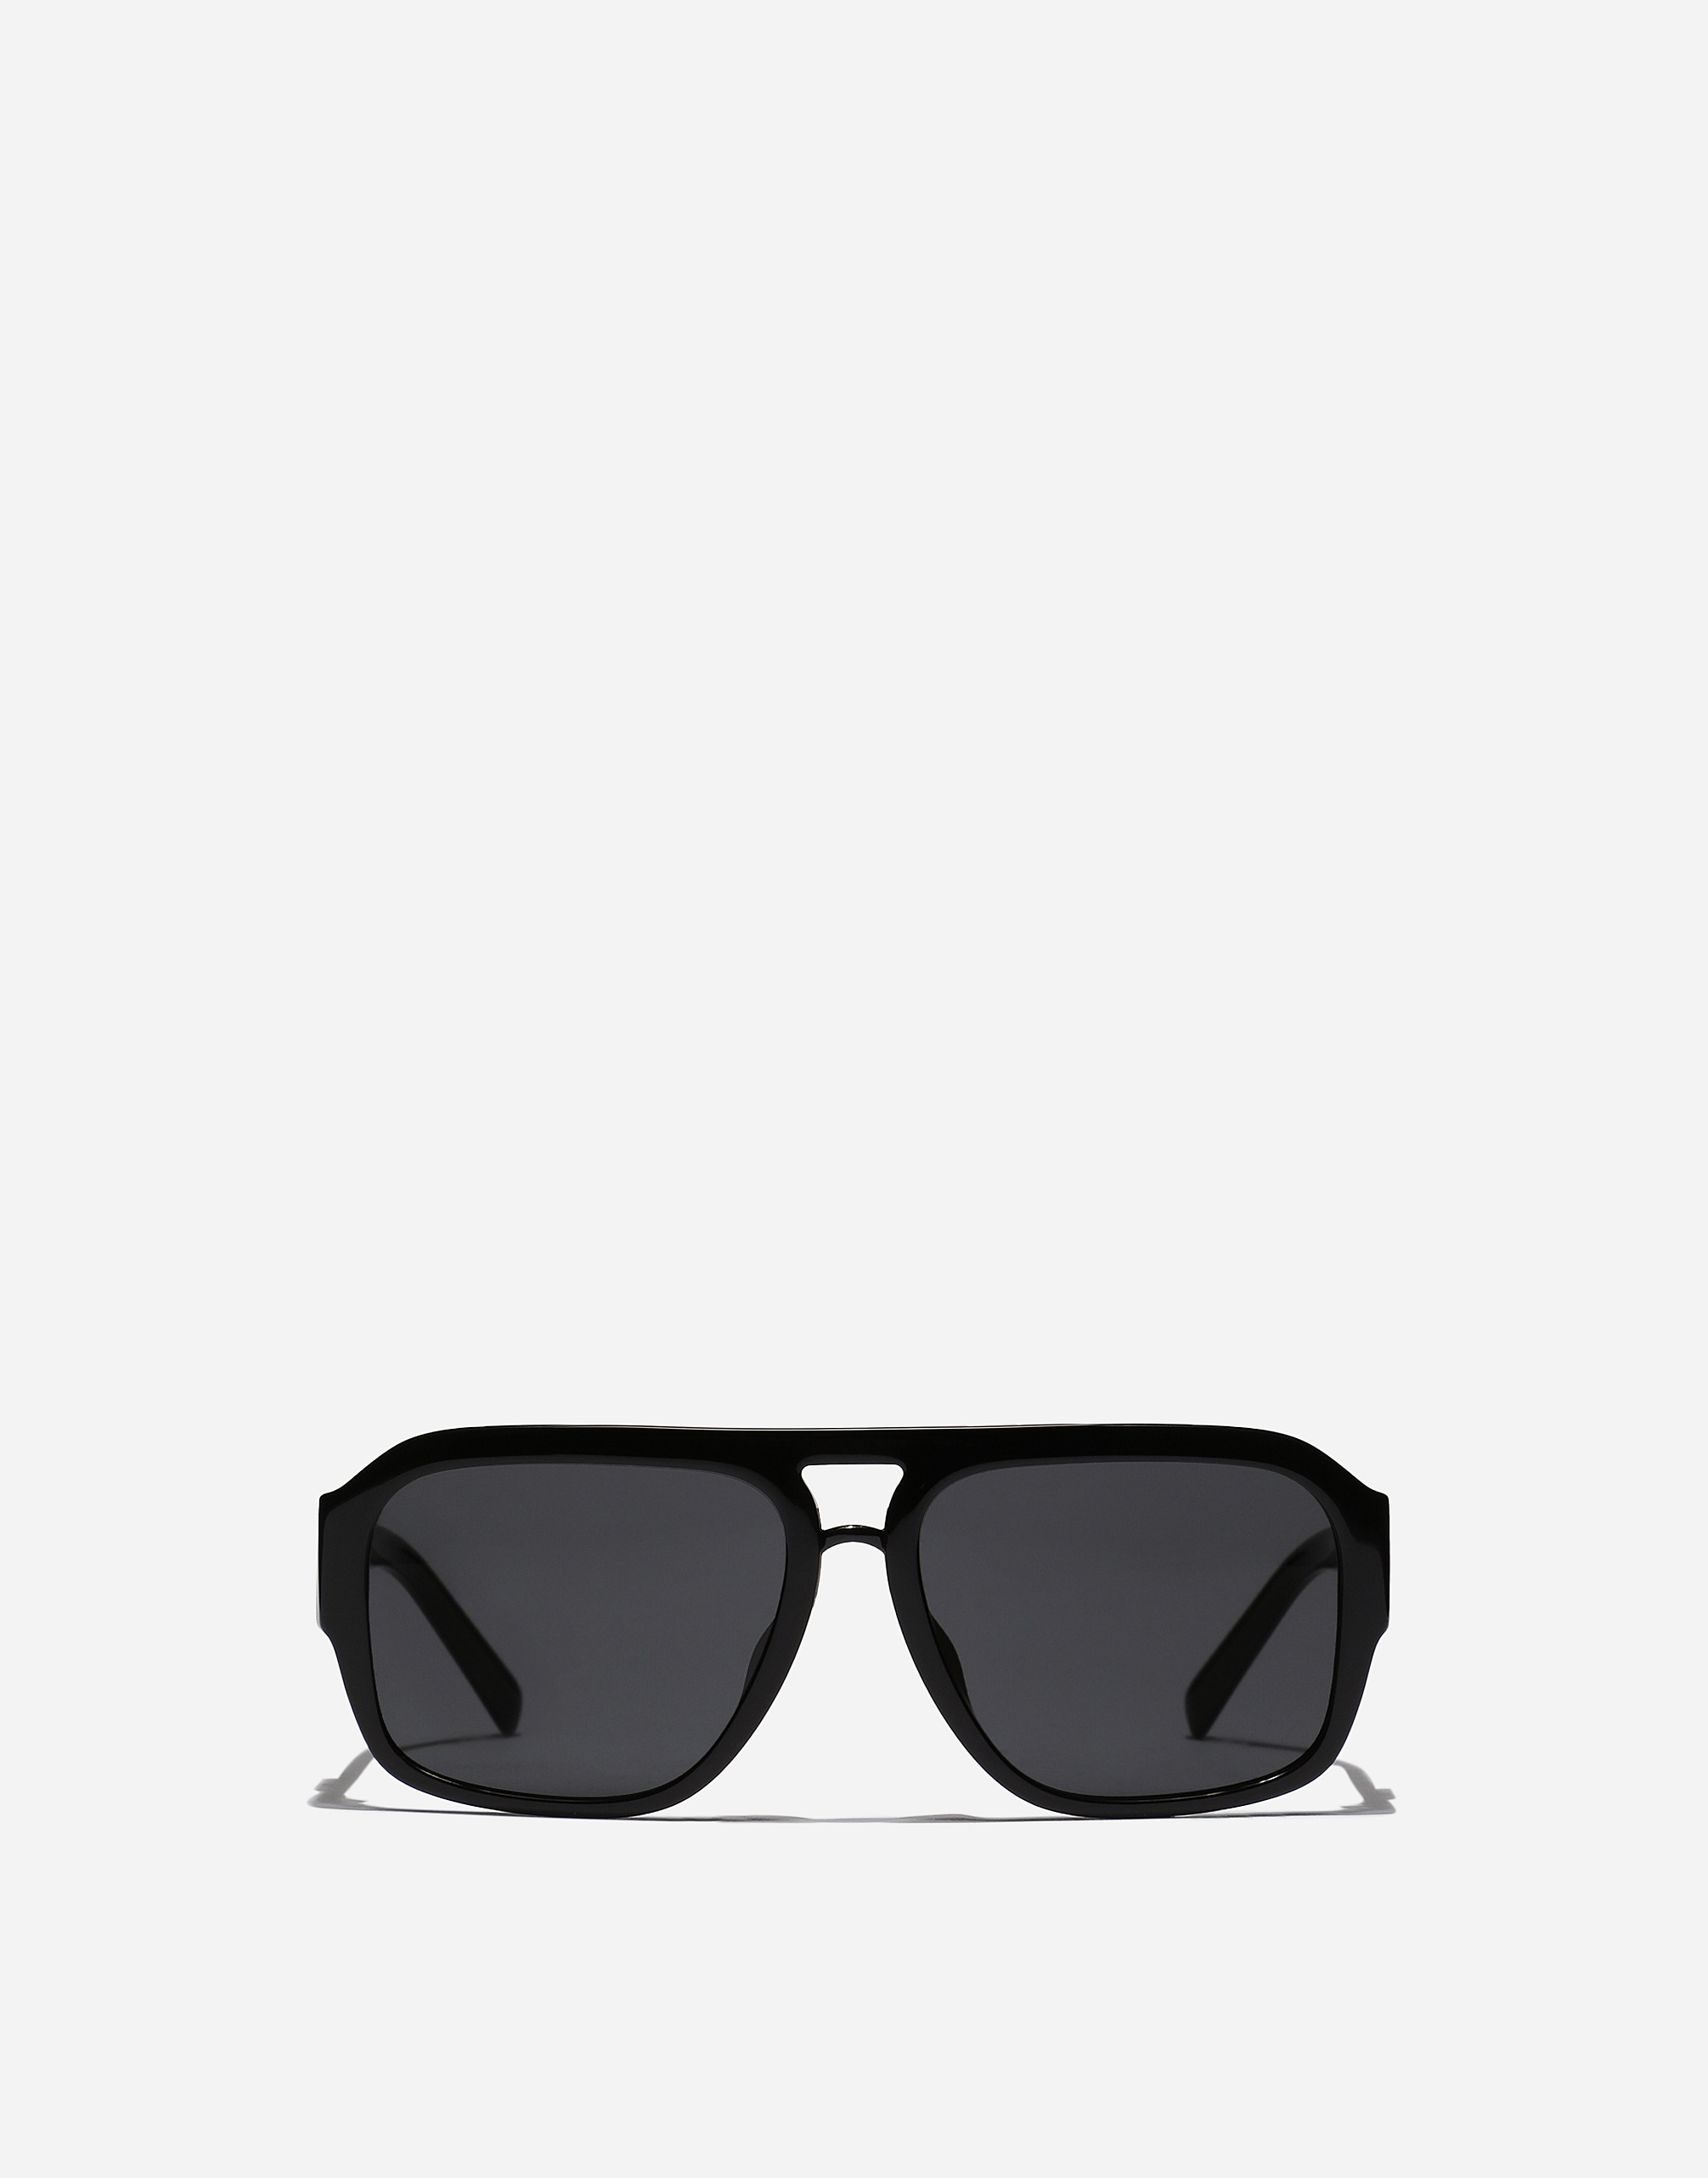 DG Crossed sunglasses in Black